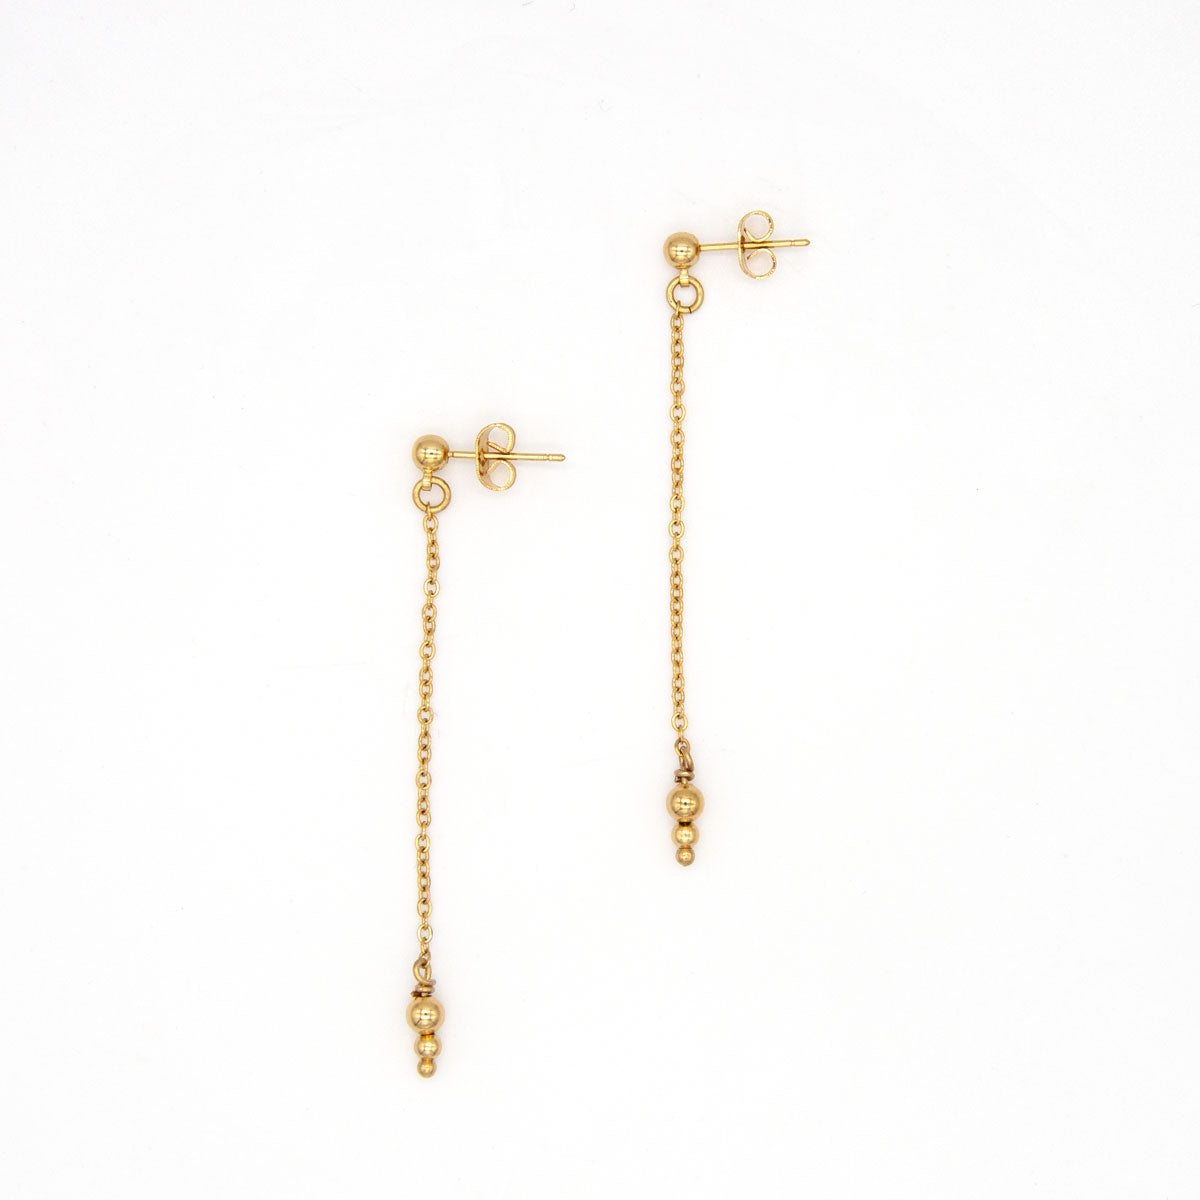 Boucles d'oreilles chaine pendante avec pendentif boules or. Fait main. Bijoux made in France